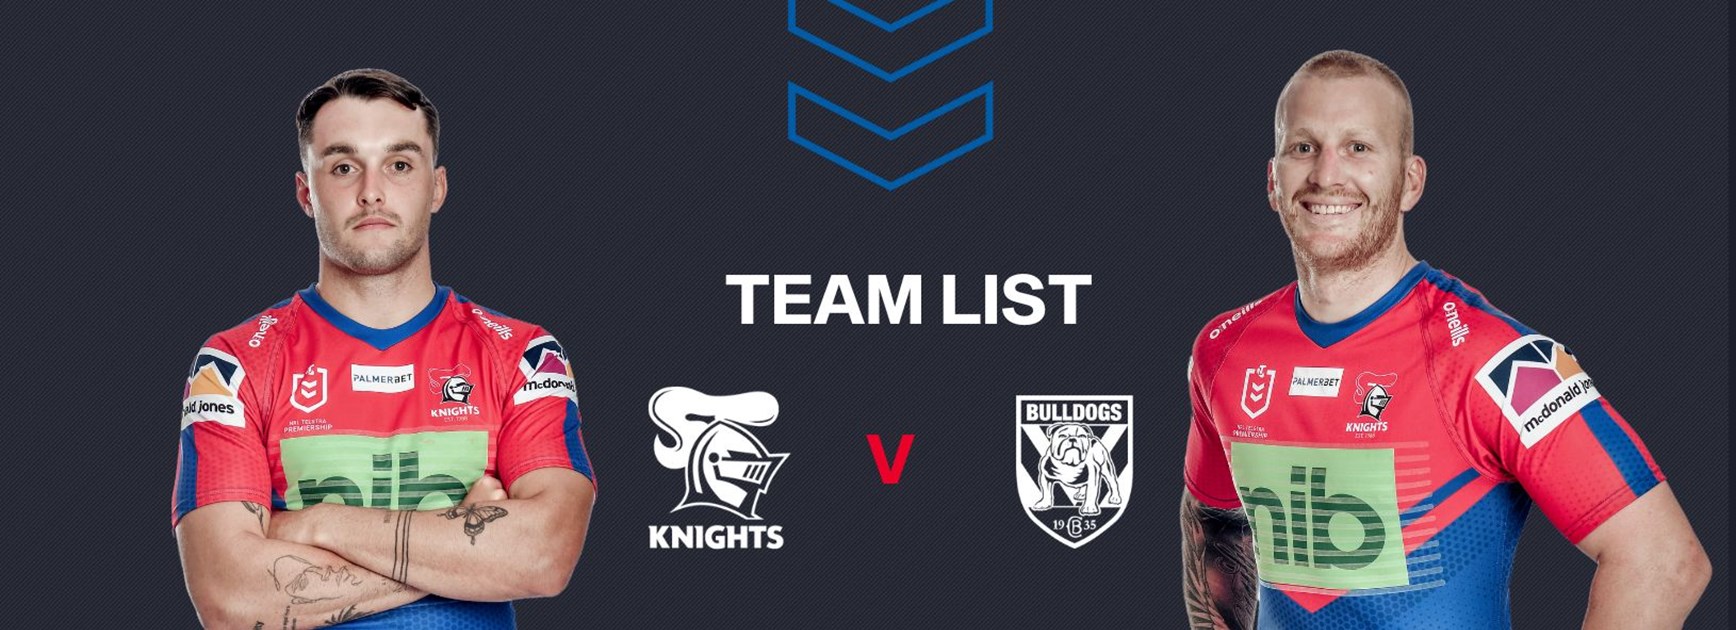 Knights v Bulldogs Round 20 NRL team list